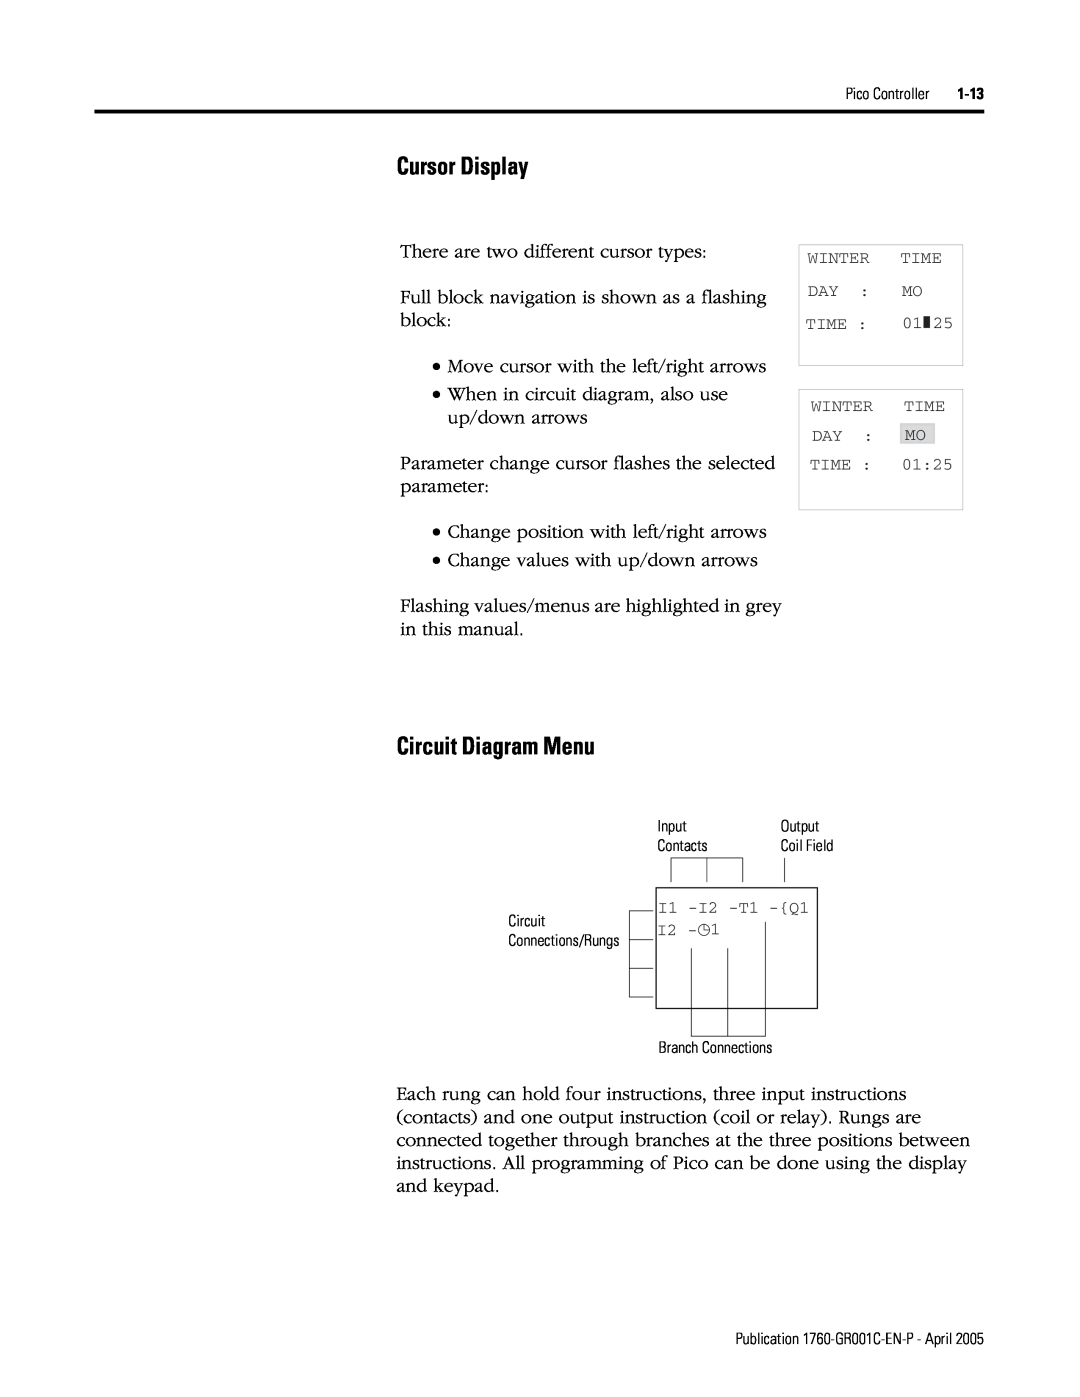 AB Soft 1760 manual Cursor Display, Circuit Diagram Menu 